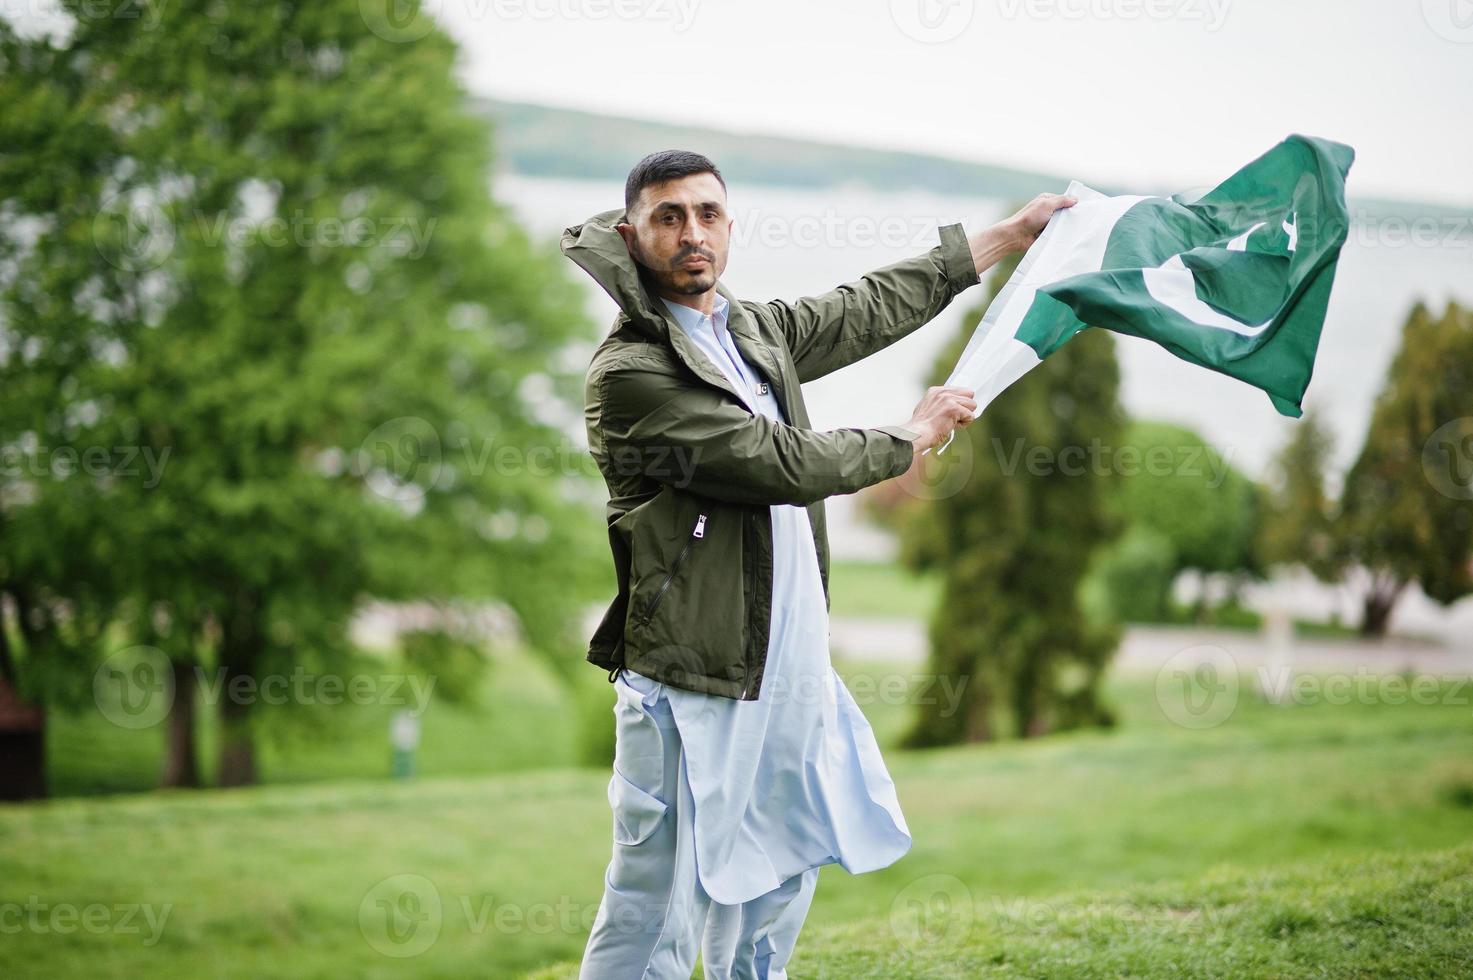 ropa tradicional retrato masculino pakistaní indio sostiene la bandera de pakistán. foto